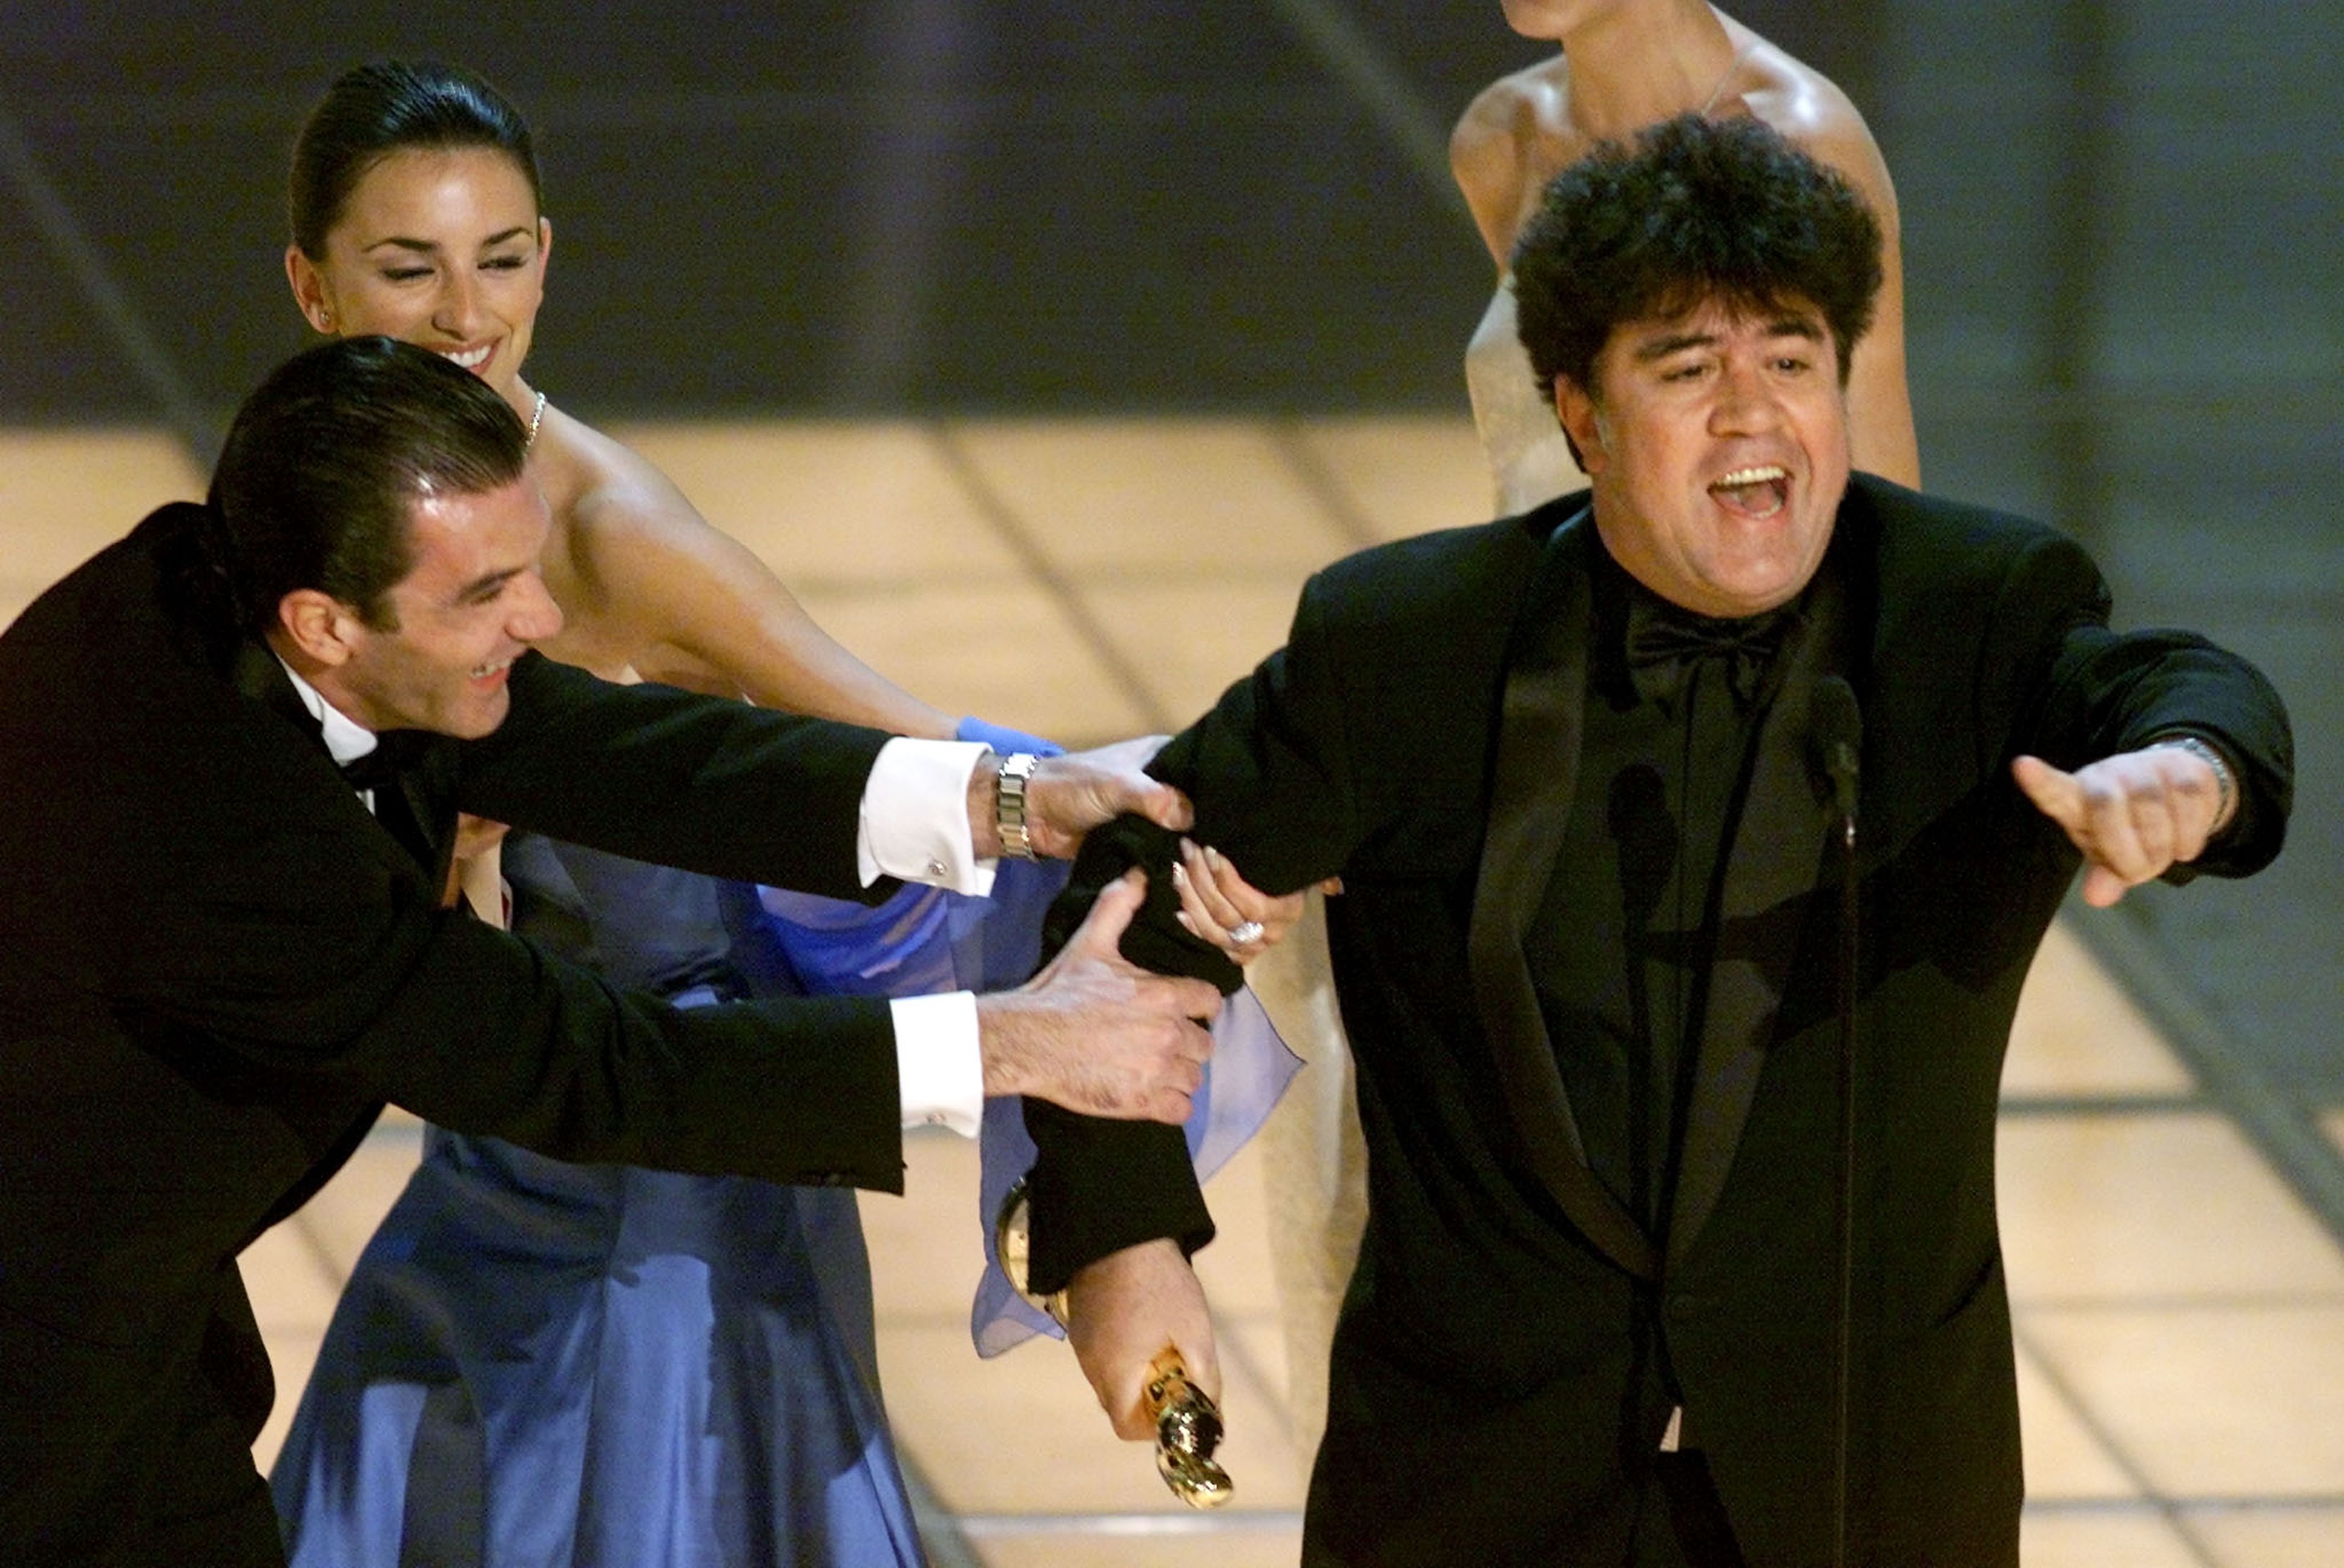 Antonio Banderas y Penélope Cruz no lo tuvieron fácil para llevarse a Pedro Almodóvar del escenario tras recibir su Óscar en 1999 por 'Todo sobre mi madre'.